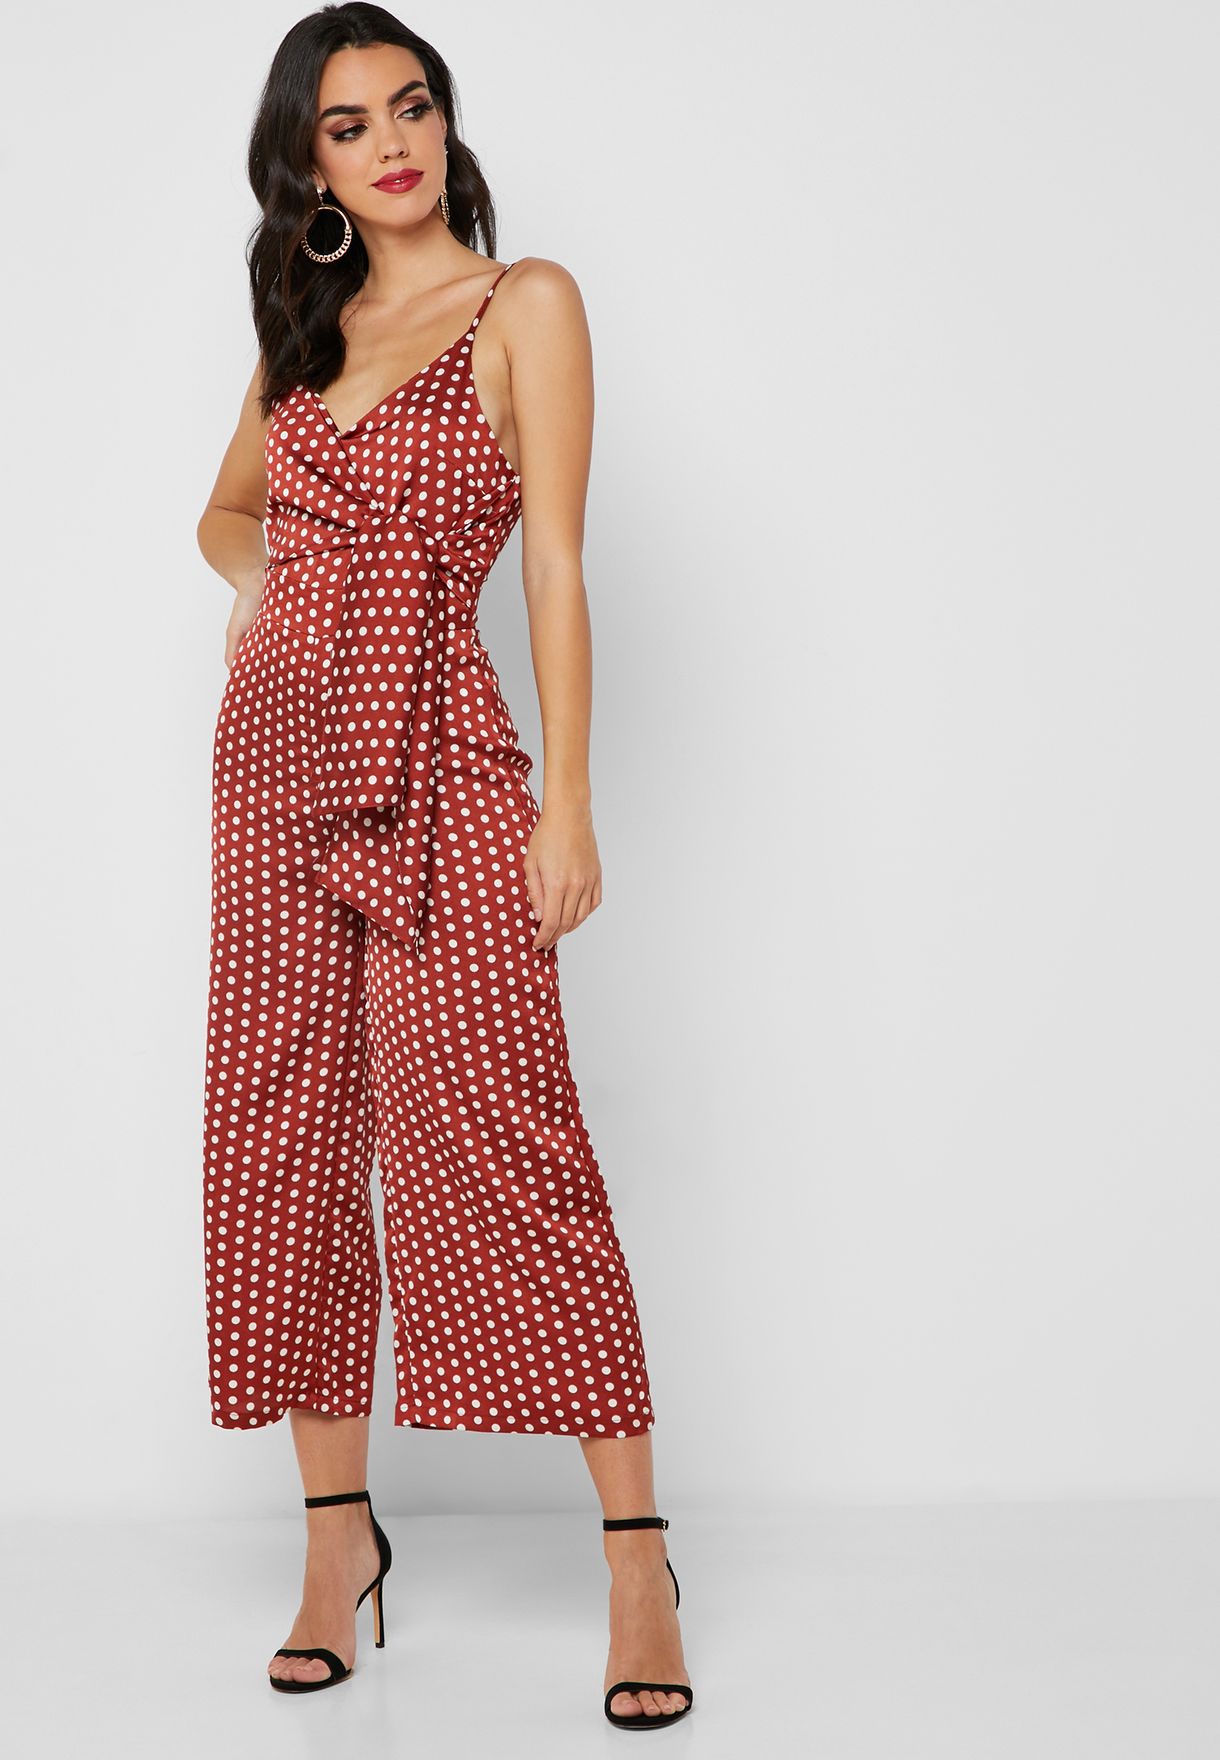 Beschikbaar gezantschap ijzer Buy Missguided prints Polka Dot Side Tie Jumpsuit for Women in MENA,  Worldwide